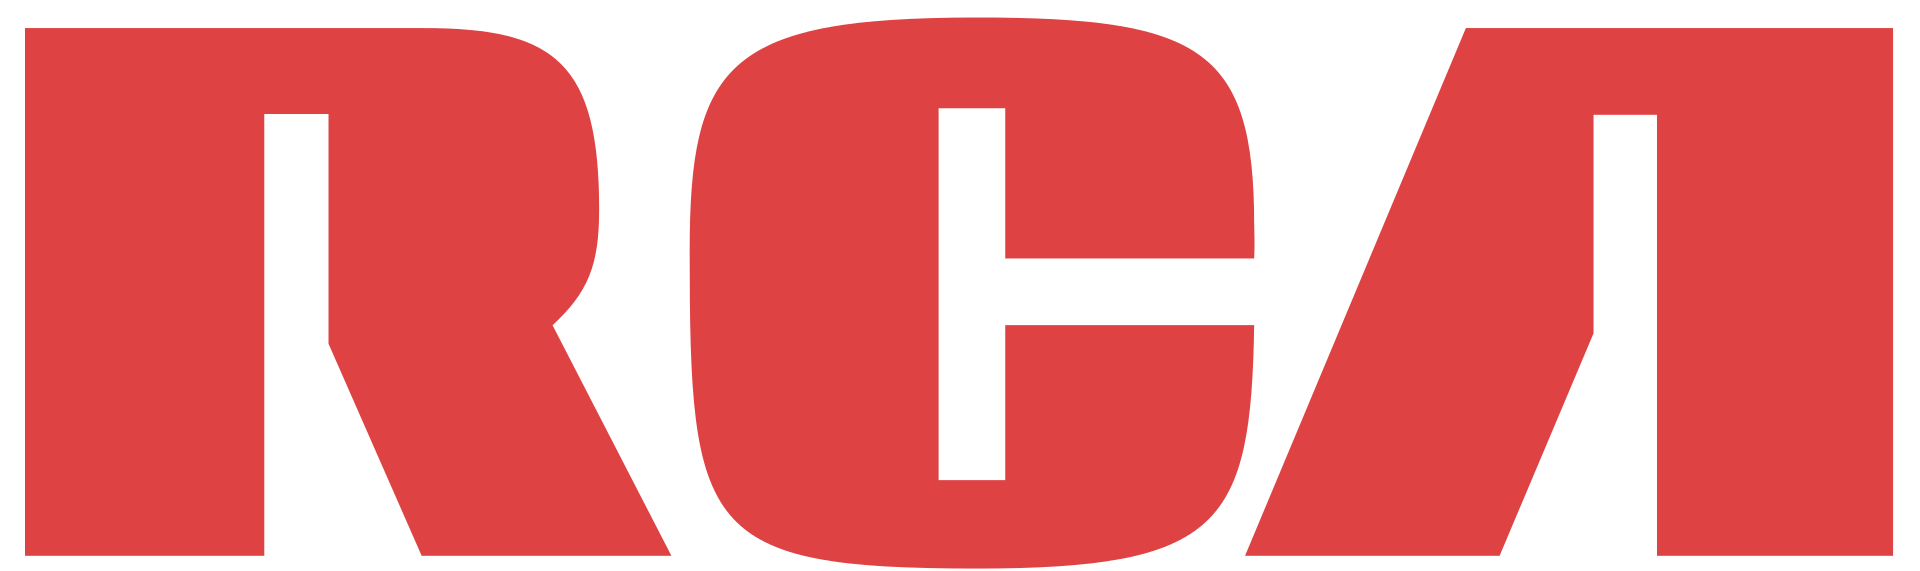 den opprinnelige rca-logoen. Bilde via Wikipedia .